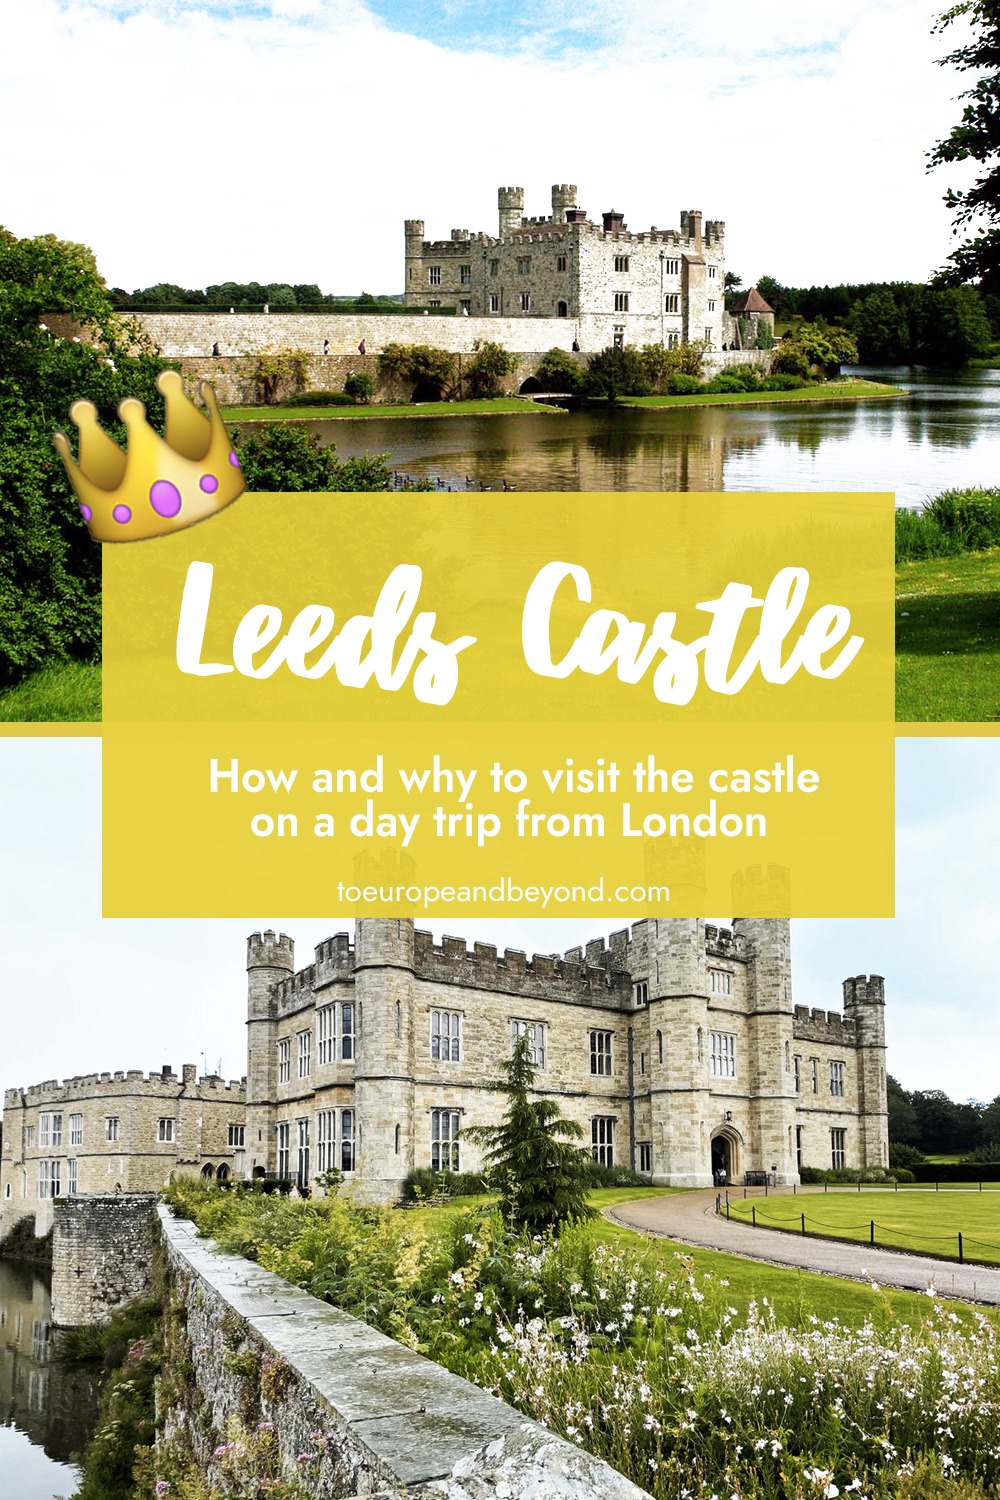 Is Leeds Castle the prettiest castle in England?